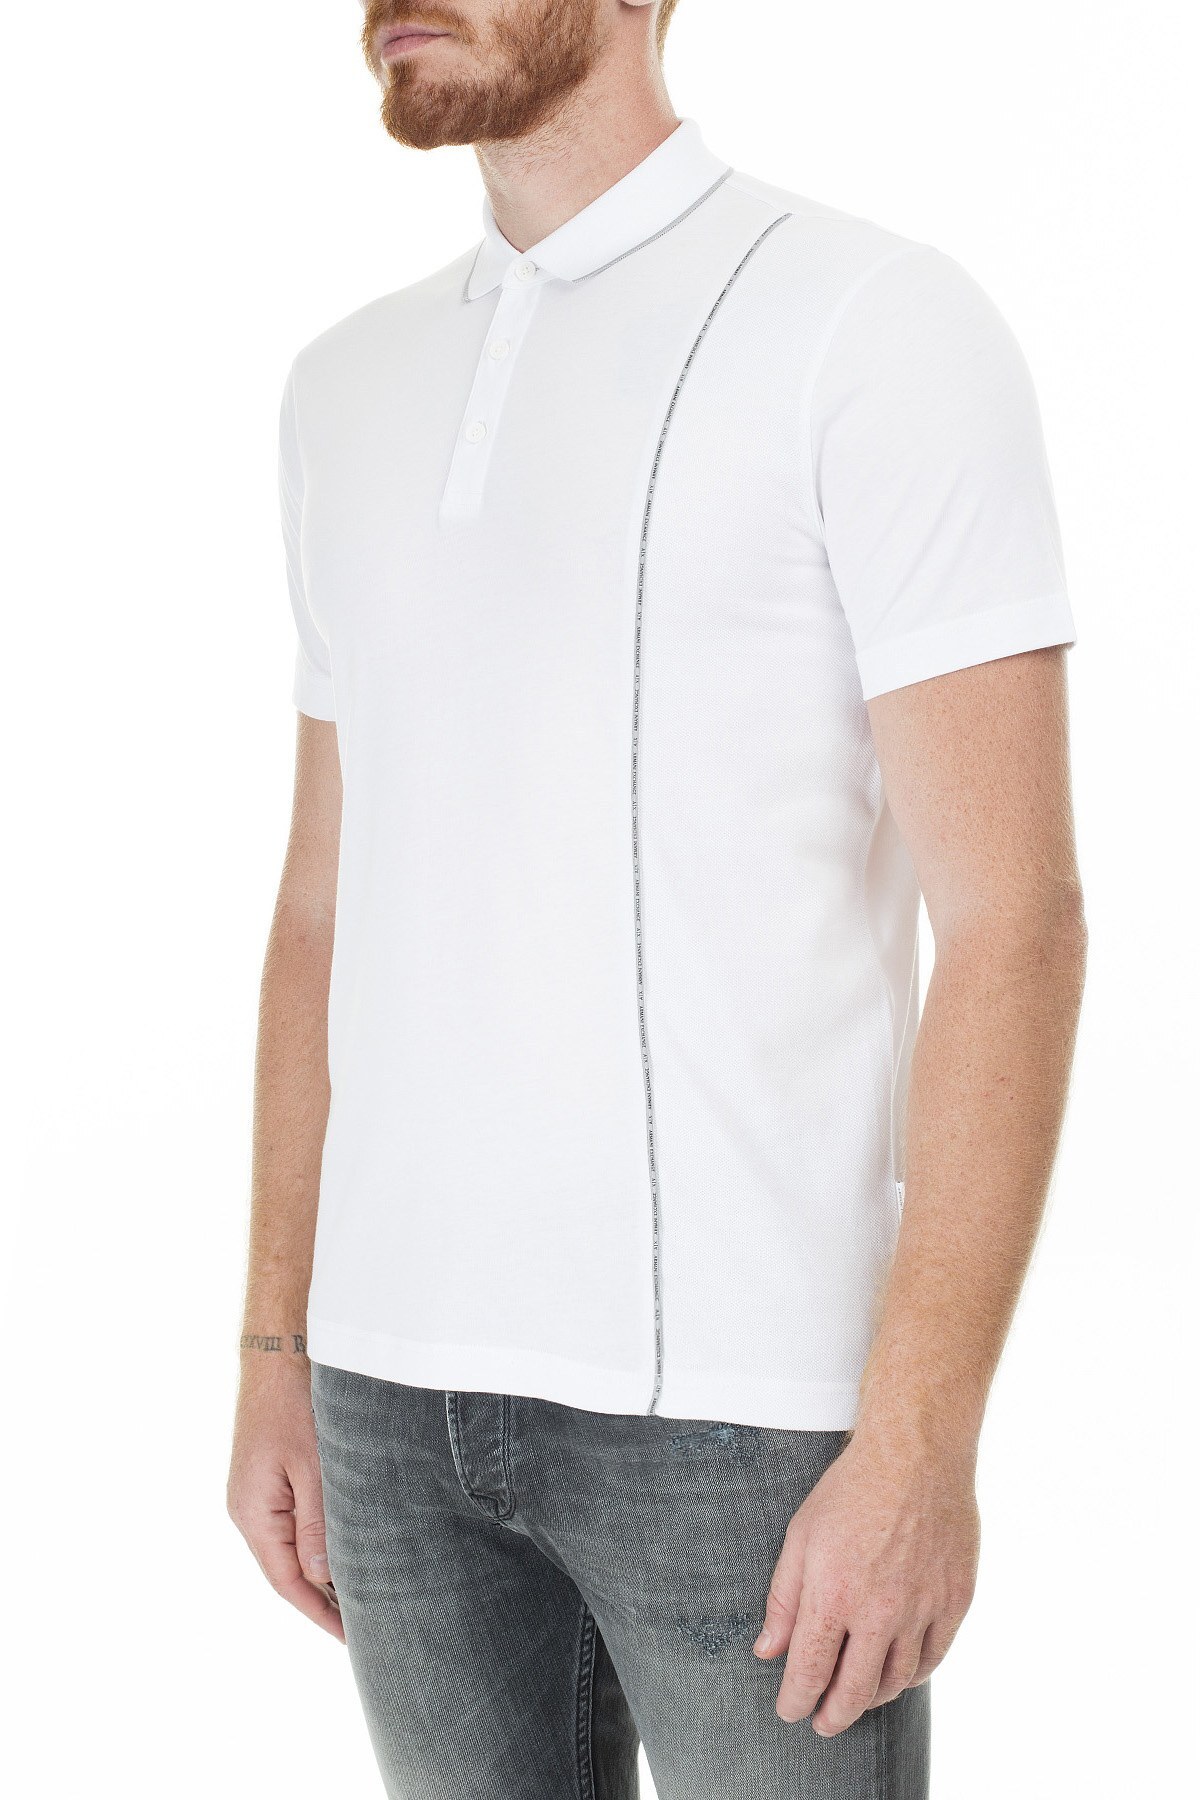 Armani Exchange Logo Baskılı Regular Fit Düğmeli T Shirt Erkek Polo 3HZFGA ZJH4Z 1100 BEYAZ